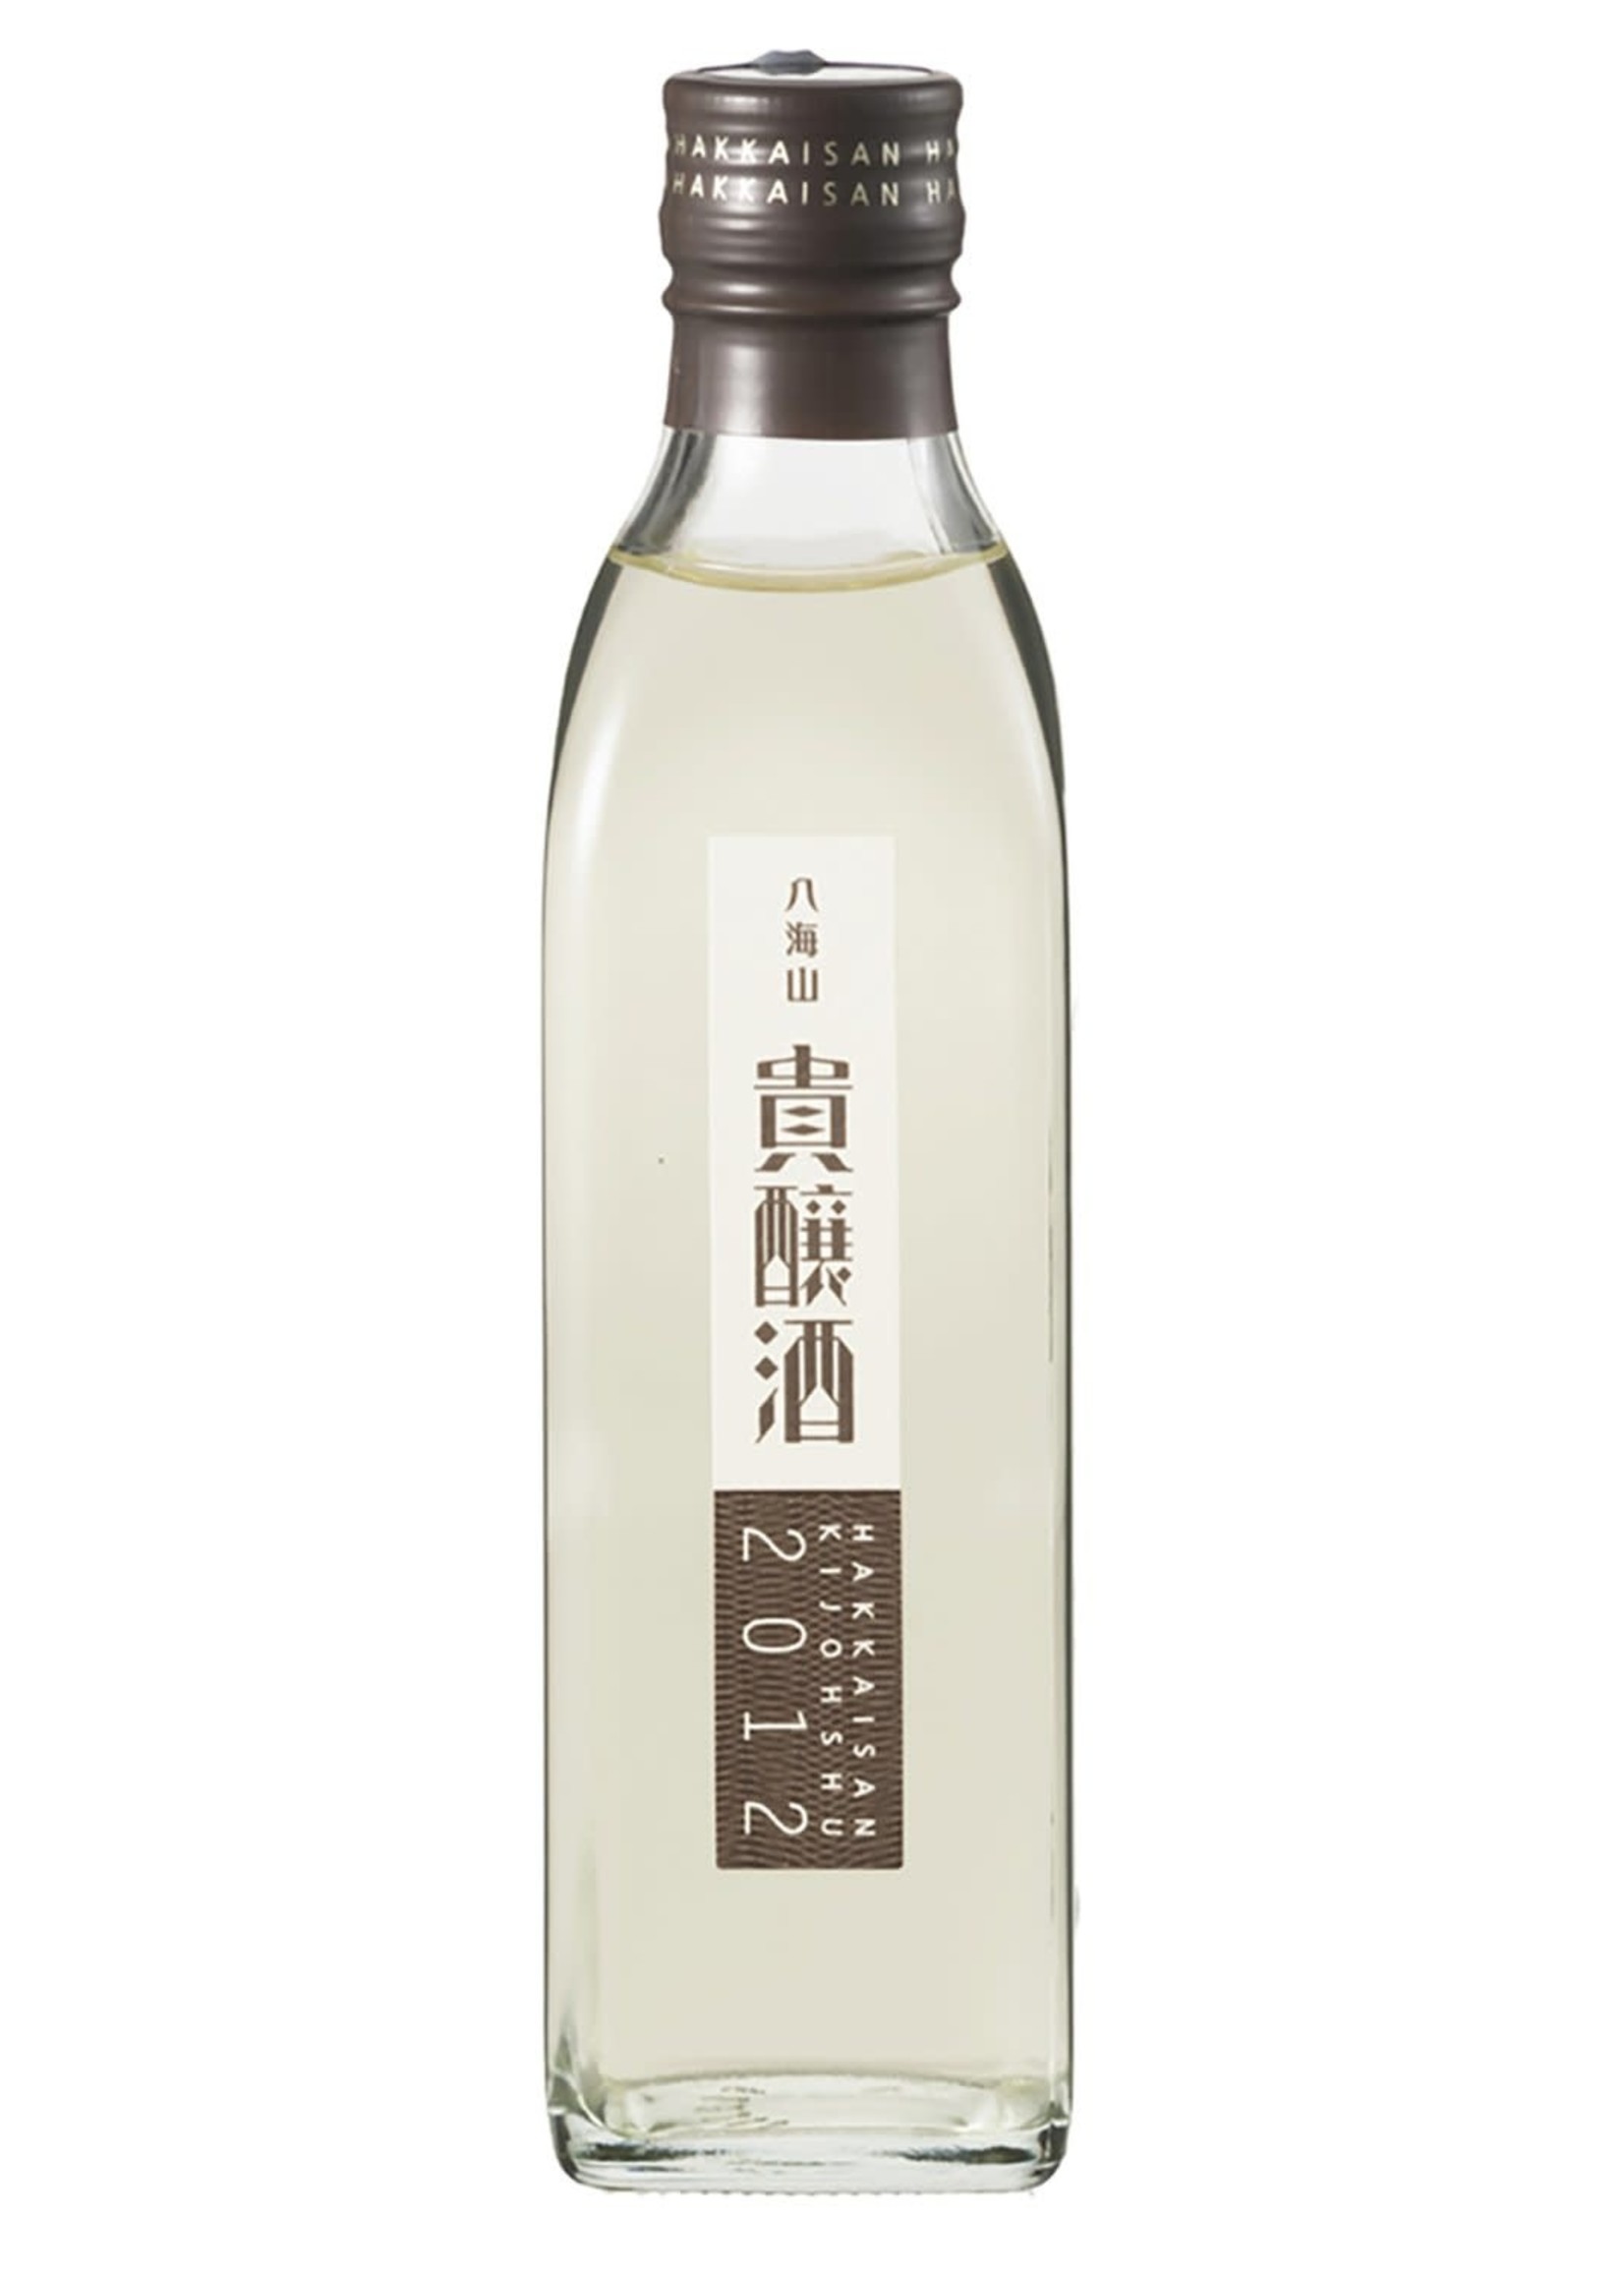 Hakkaisan Sake Brewery Hakkaisan / Kijoshu Sake / 300mL